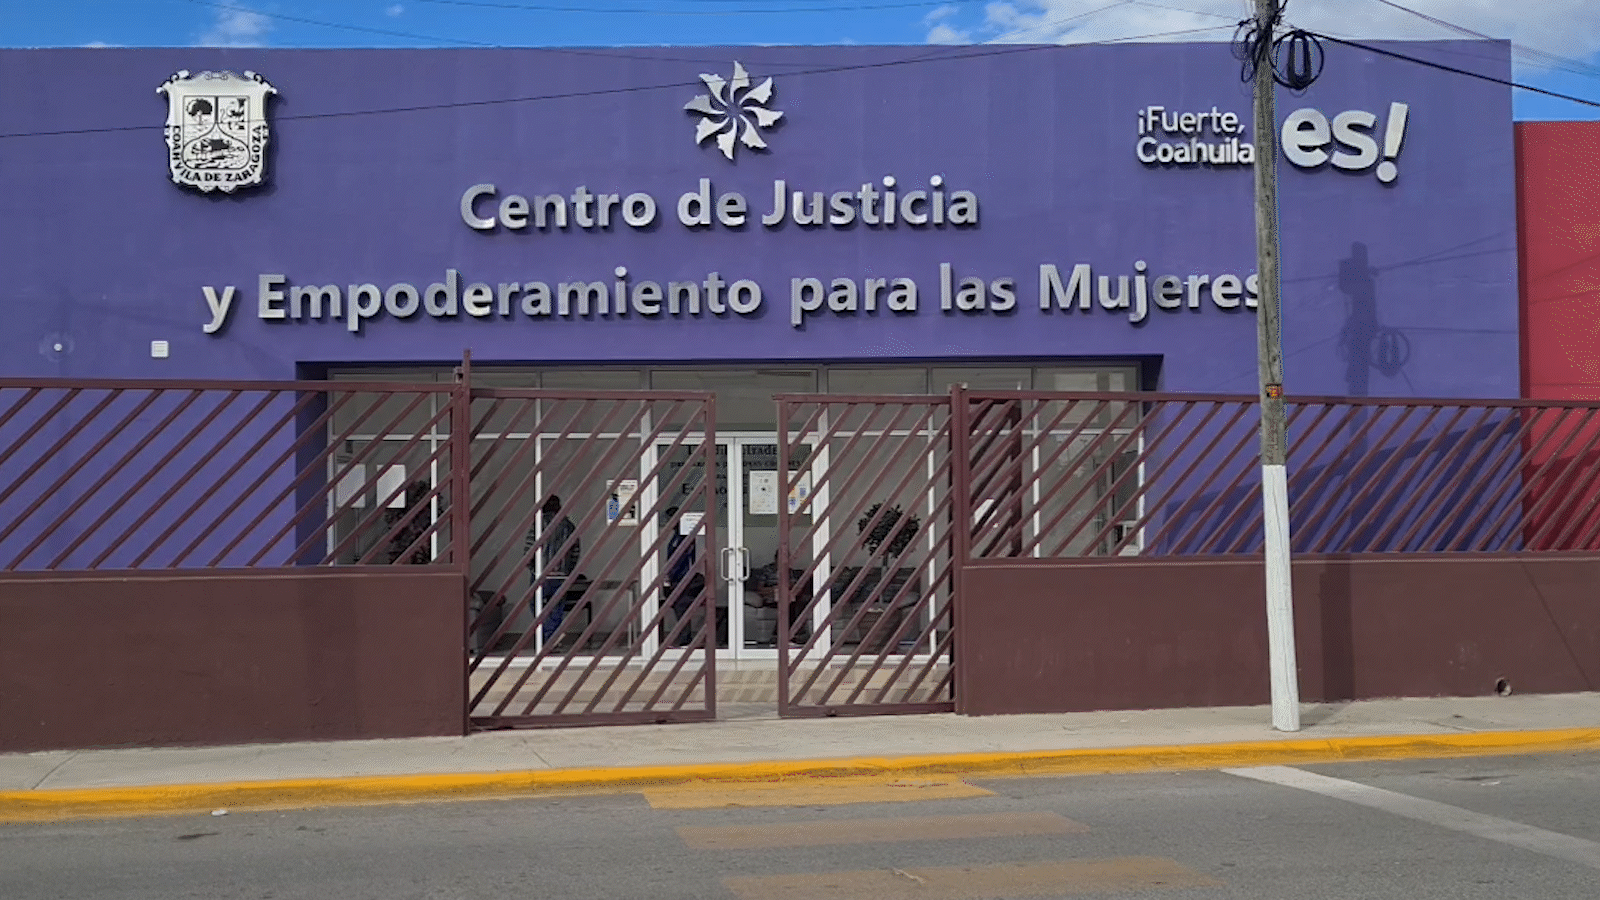 Centro de Justicia y Empoderamiento para las Mujeres